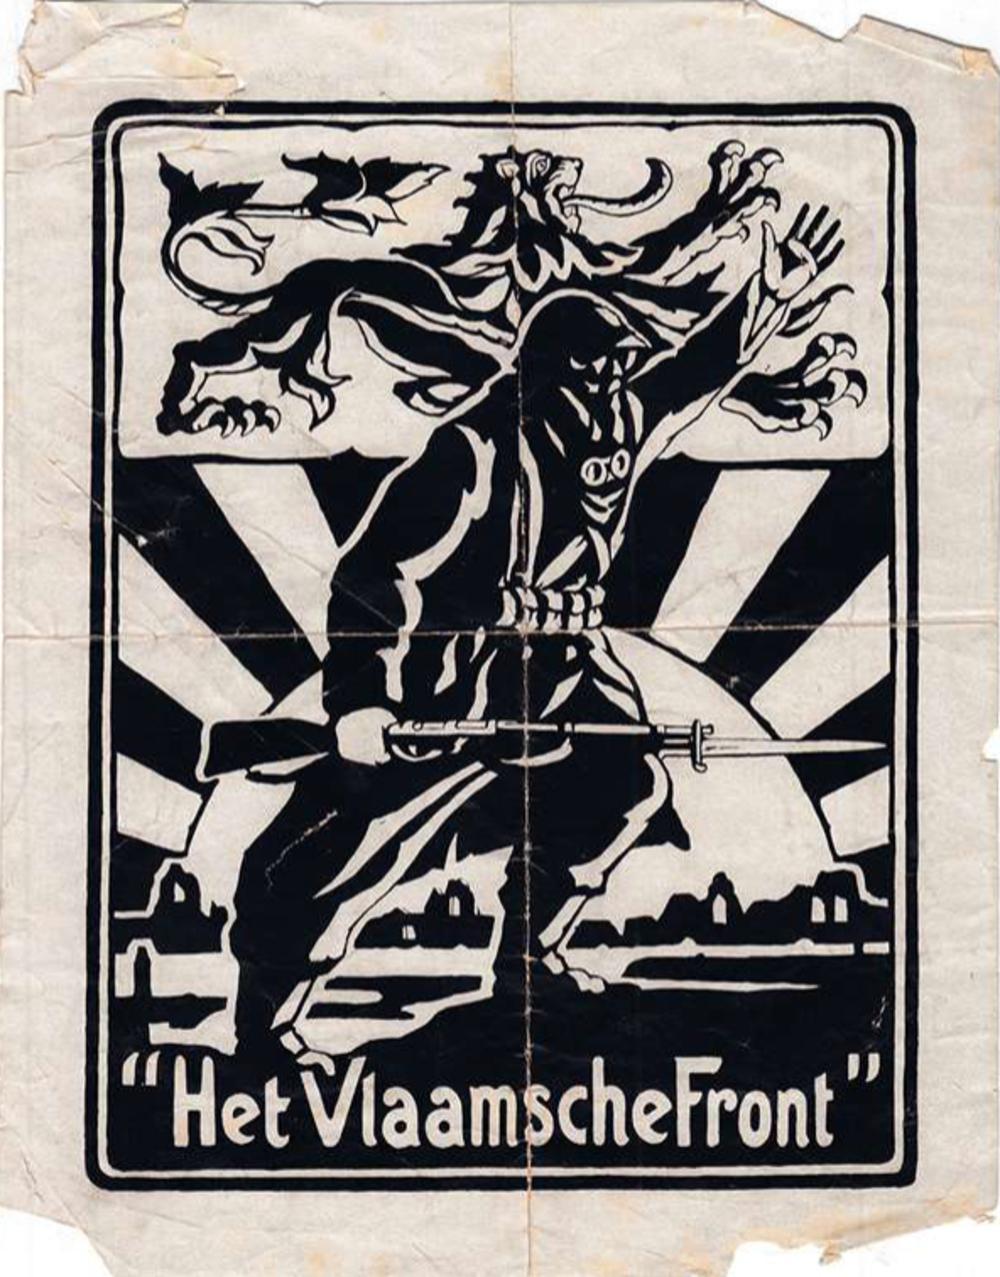 In Vlaanderen meldt zich een nieuwe partij, een echte oorlogsvrucht: het Vlaamse Front, gesticht door ex-soldaten met een radicaalnationalistisch programma: 'Vlaams Zelfbestuur'.